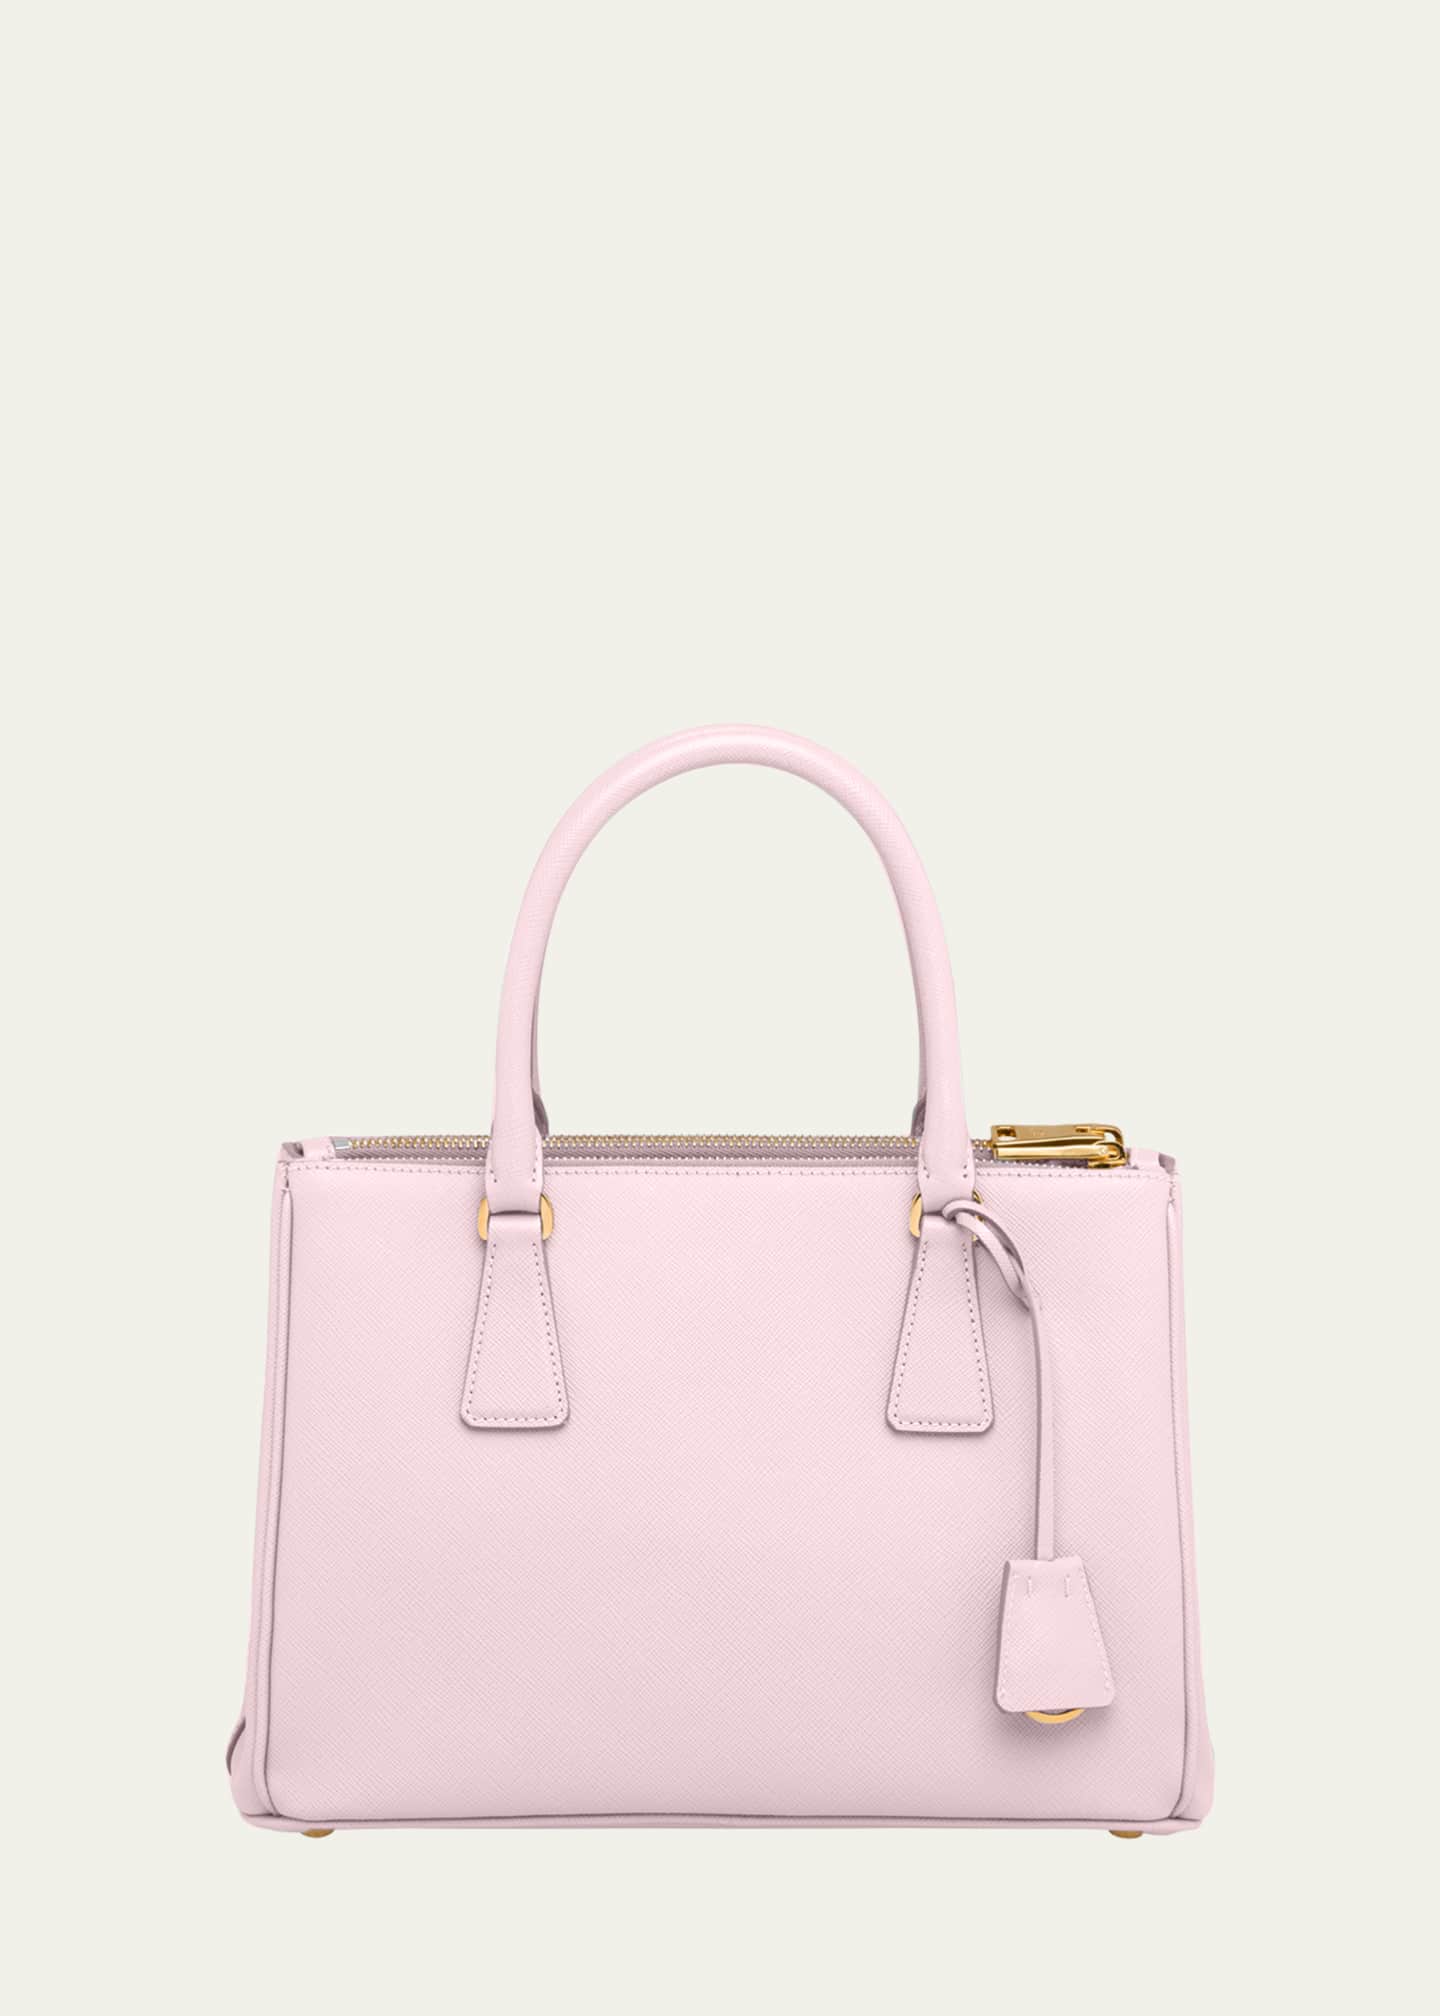 Prada Galleria mini pink bag